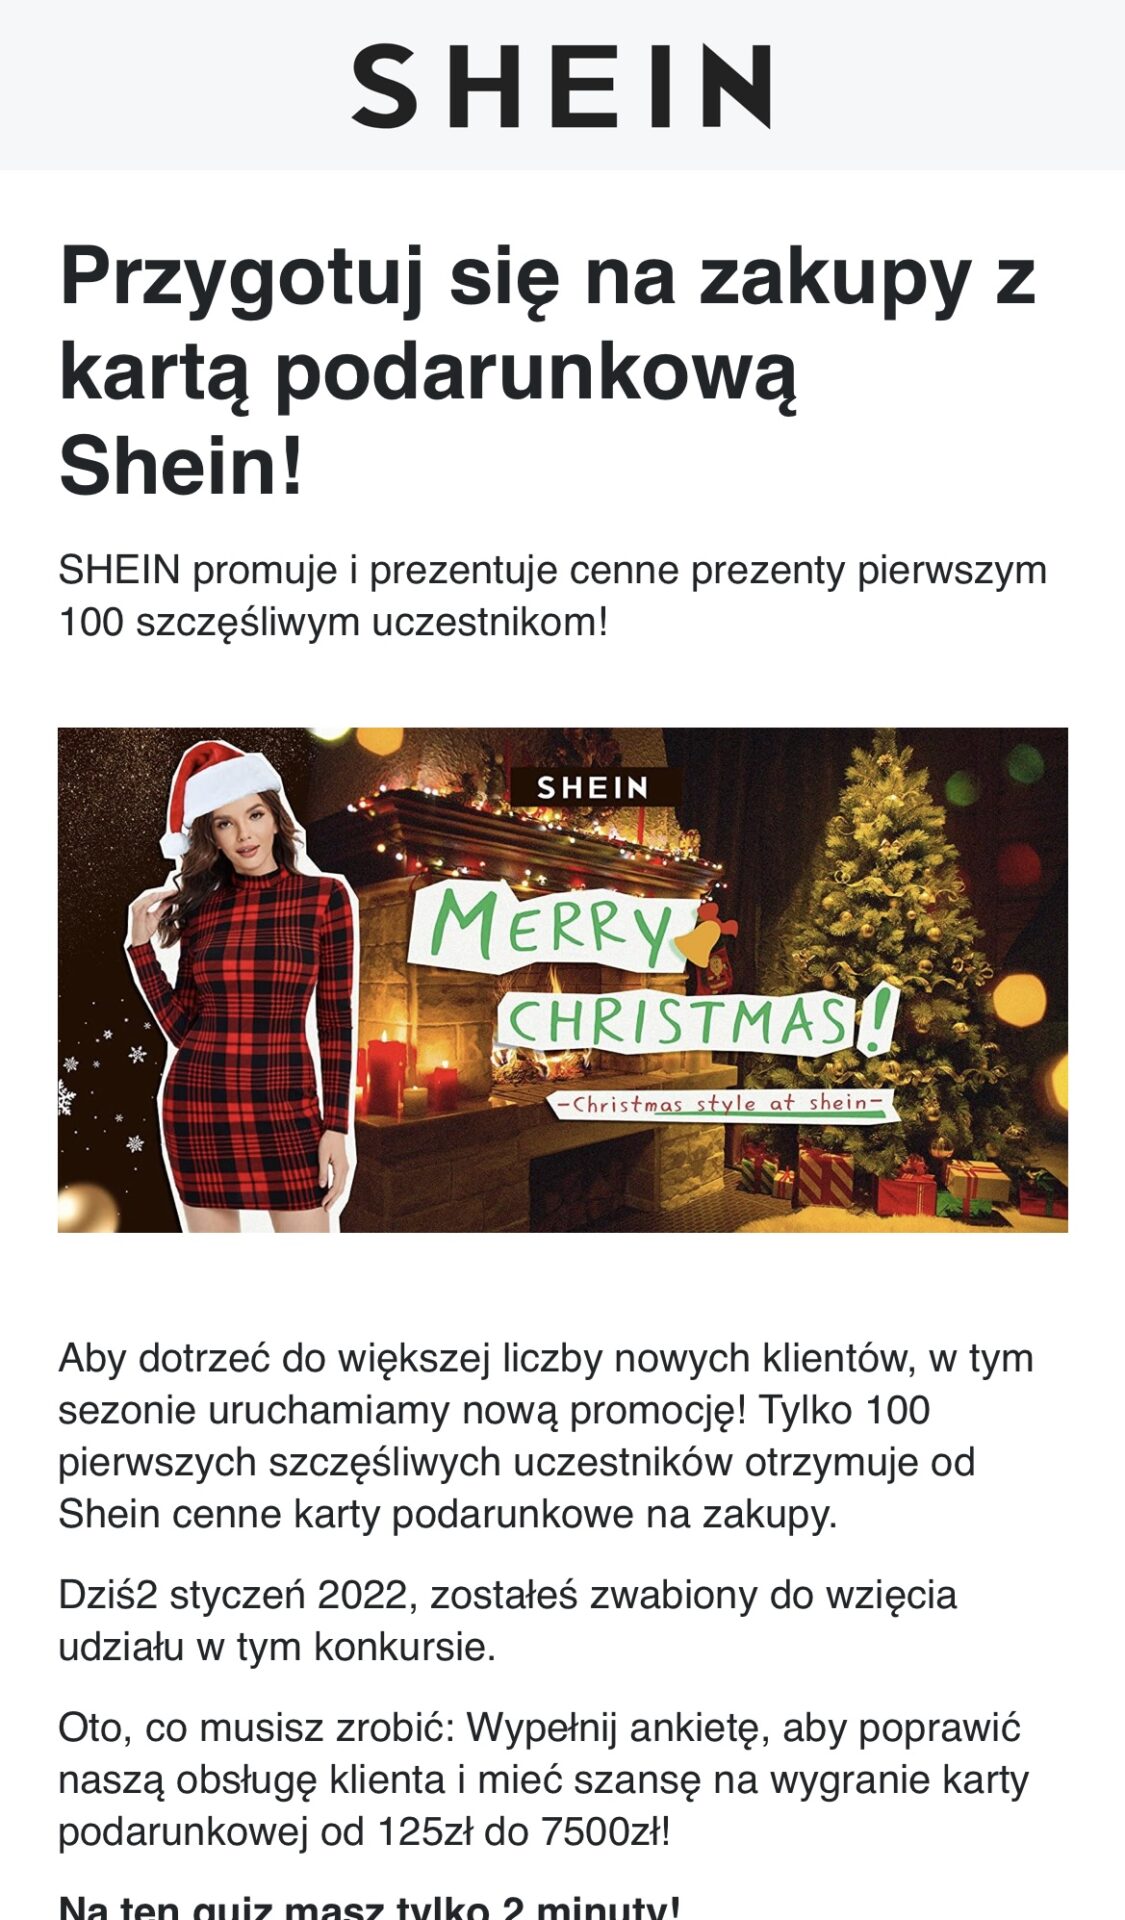 Zrzut ekranu strony, do której odnosi reklama. Logo sklepu Shein, poniżej zdjęcie modelki i opis zachęcający do wypełnienia ankiety. 